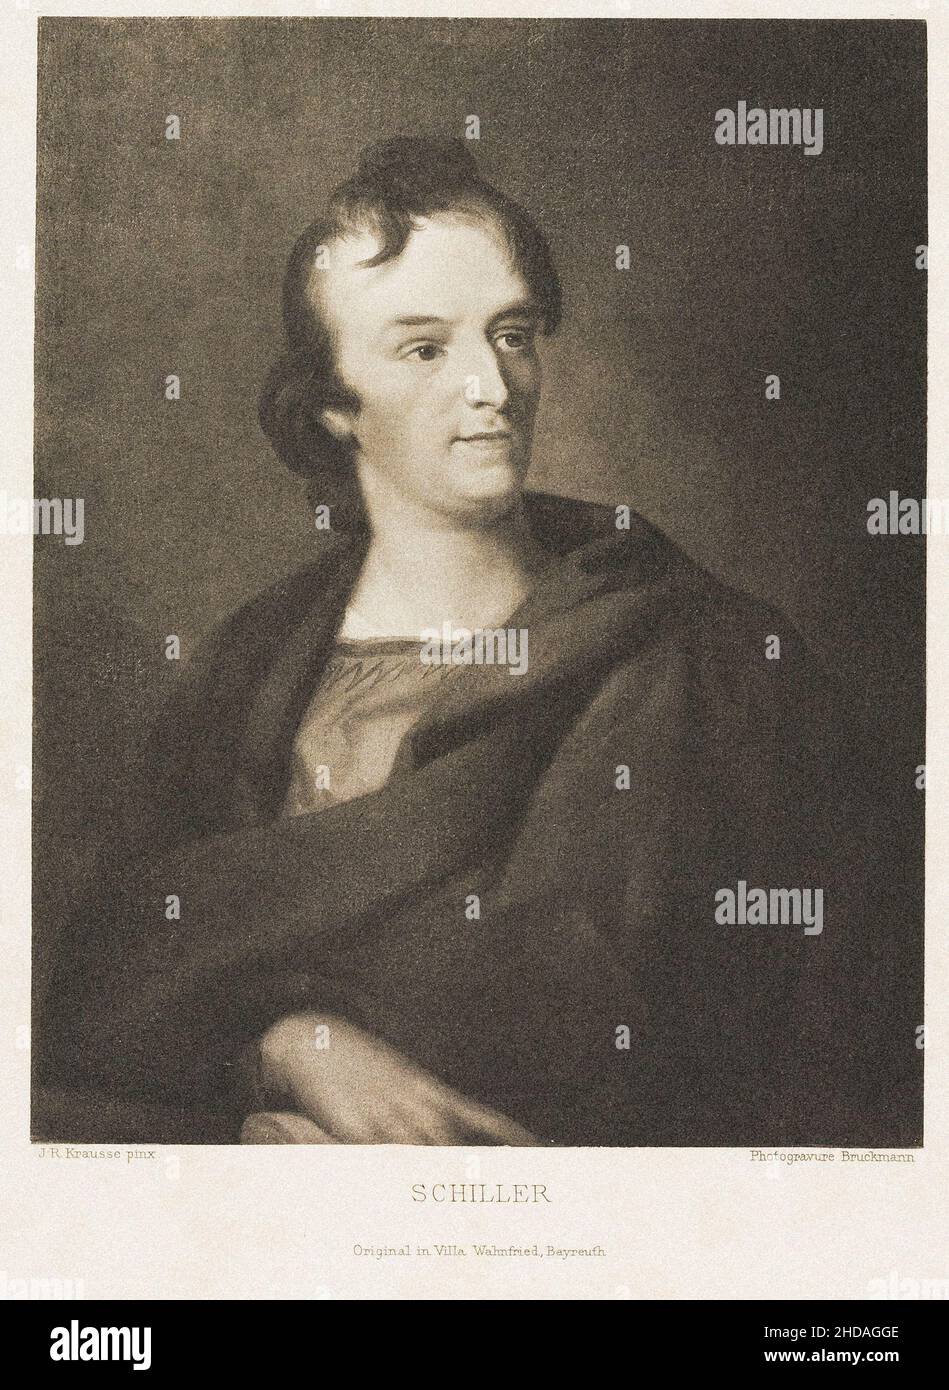 Kupferstich-Porträt von Friedrich Schiller von J.R. Krausse. Johann Christoph Friedrich (von) Schiller (1759 – 1805) war ein deutscher Dramatiker, Dichter und Schriftsteller Stockfoto